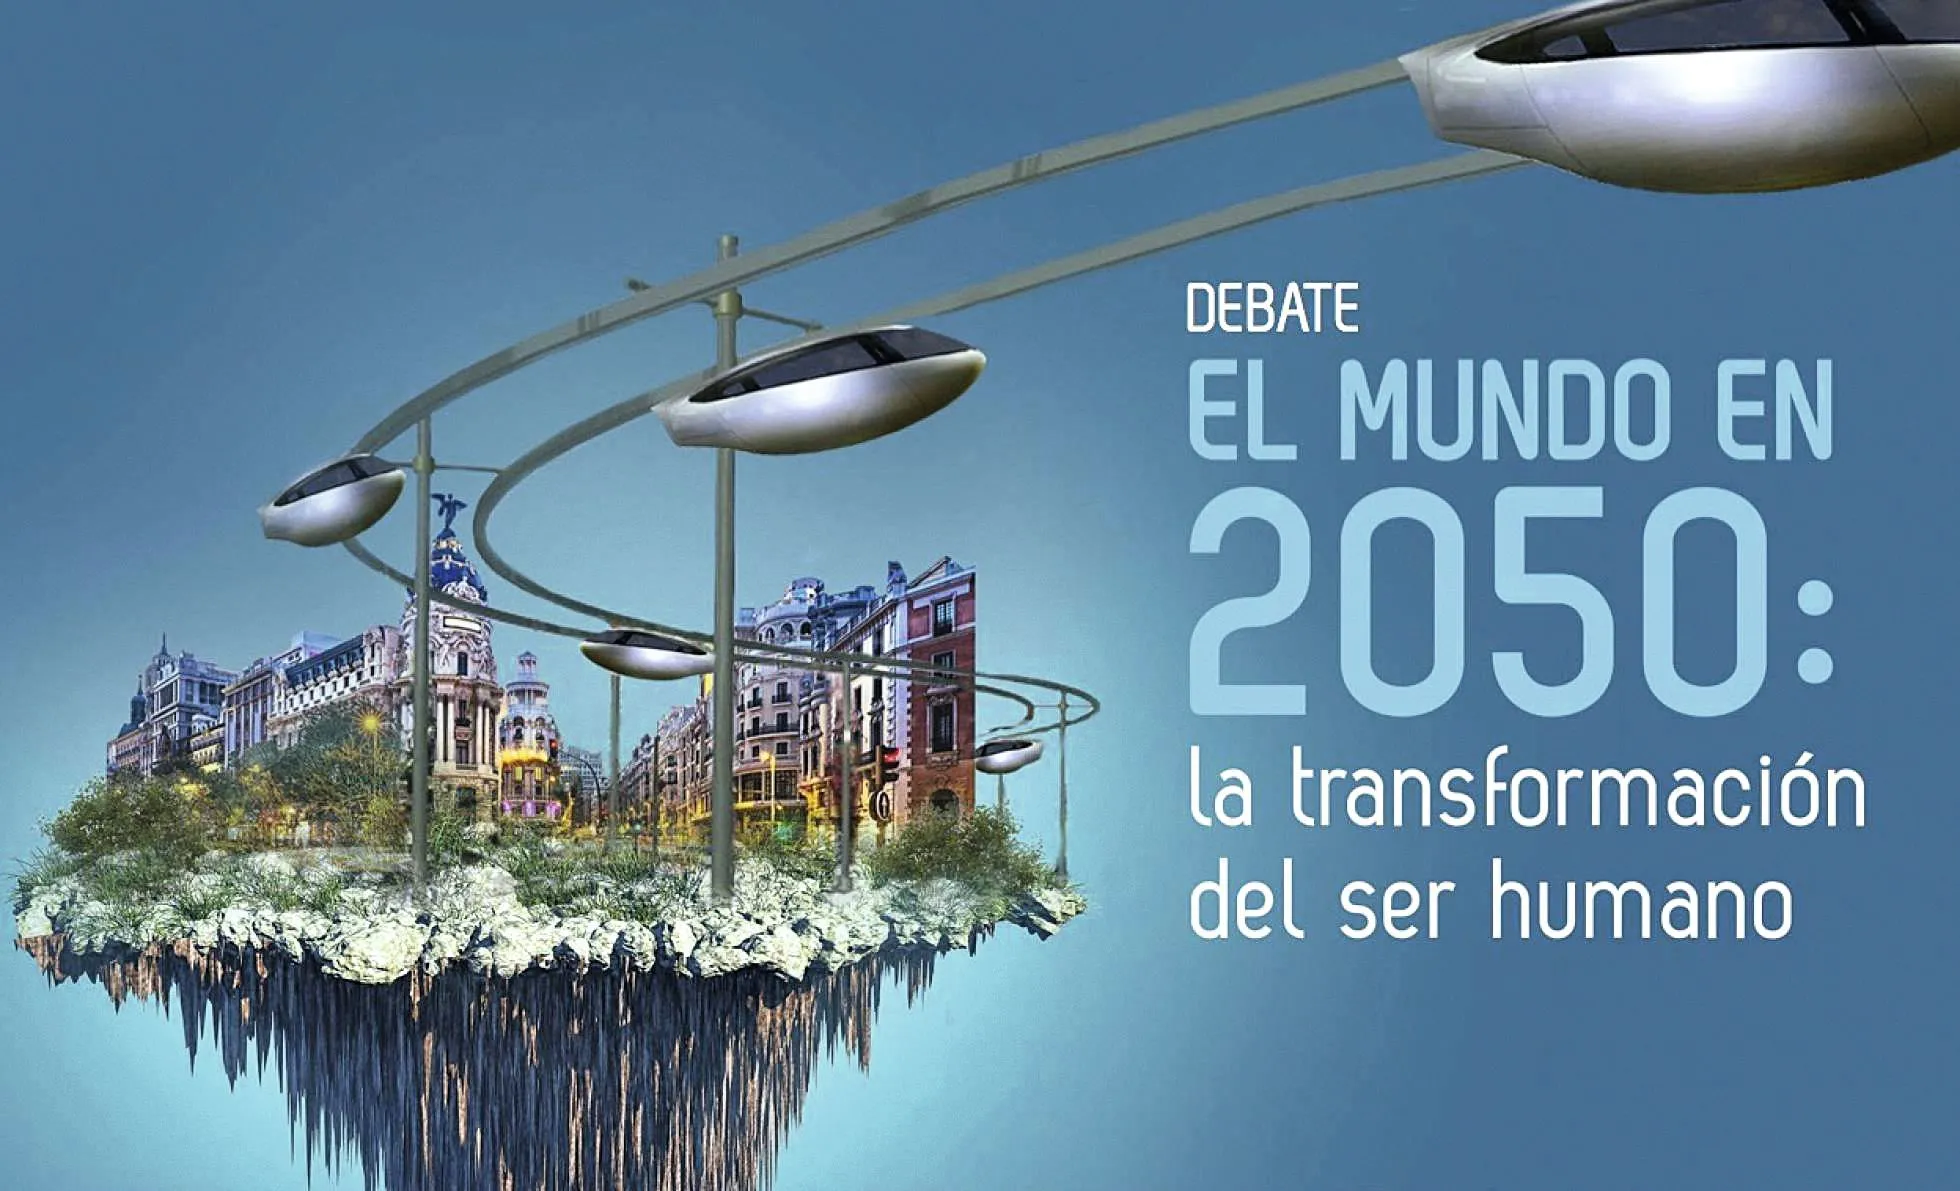 El mundo en 2050, Madrid, 2017.